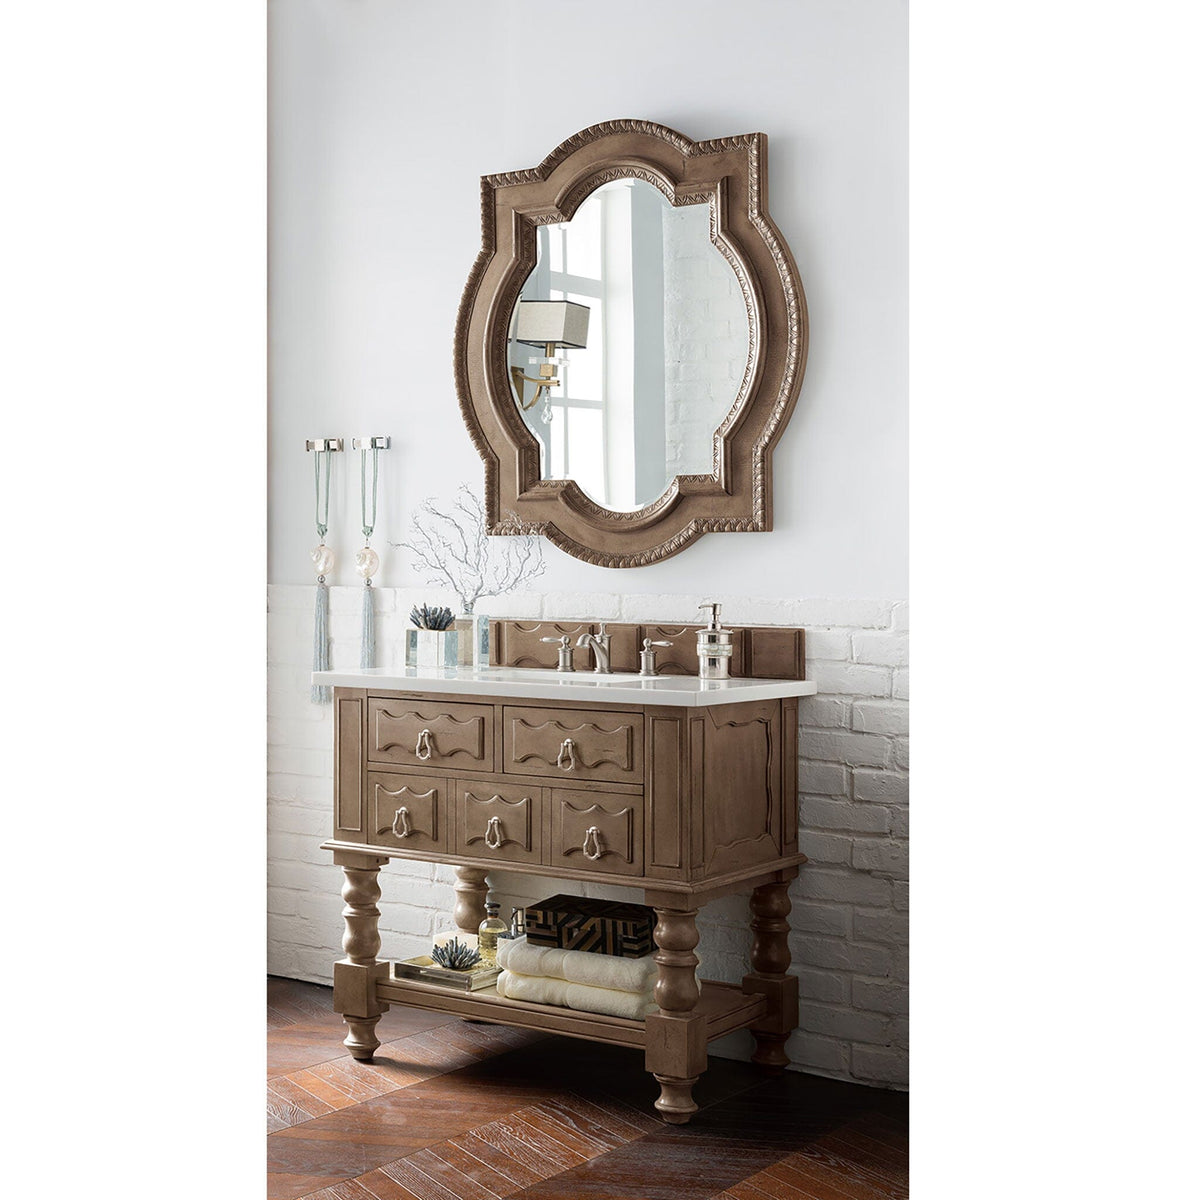 36" Castilian Single Bathroom Vanity, Empire Gray - vanitiesdepot.com